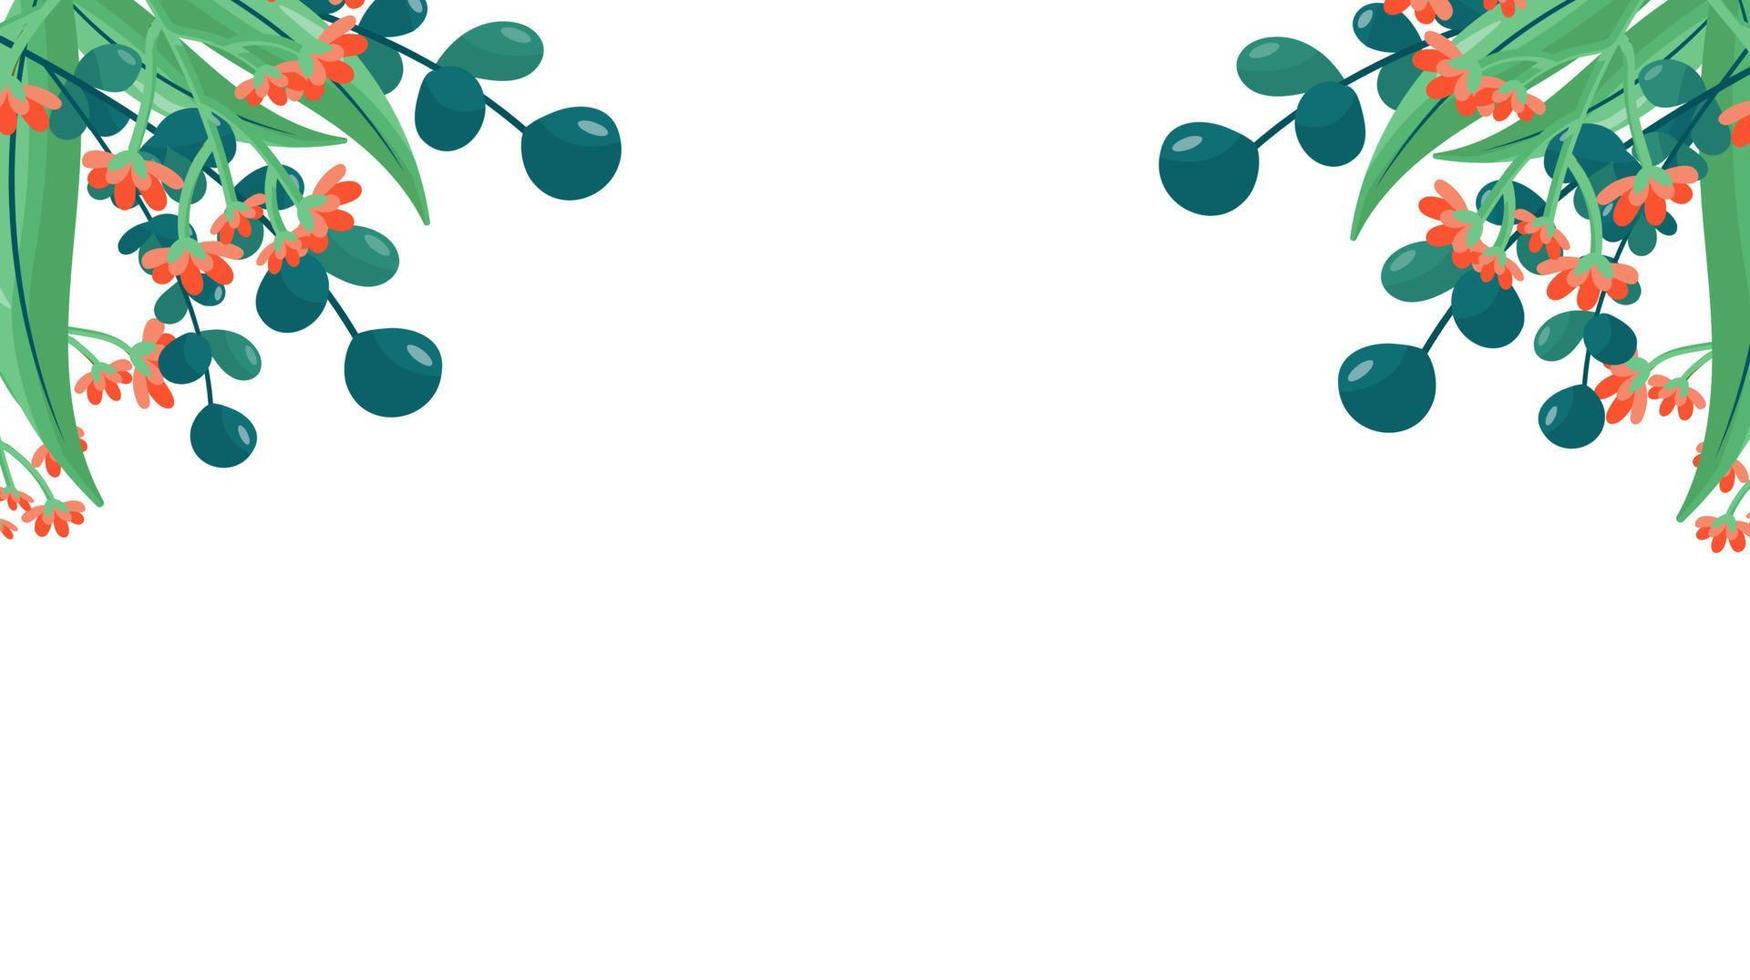 bannière de vecteur minimaliste de plantes. fleurs dessinées à la main, herbe, branches, feuilles sur fond blanc. motif horizontal simple vert. style plat simple. tous les éléments sont isolés et modifiables